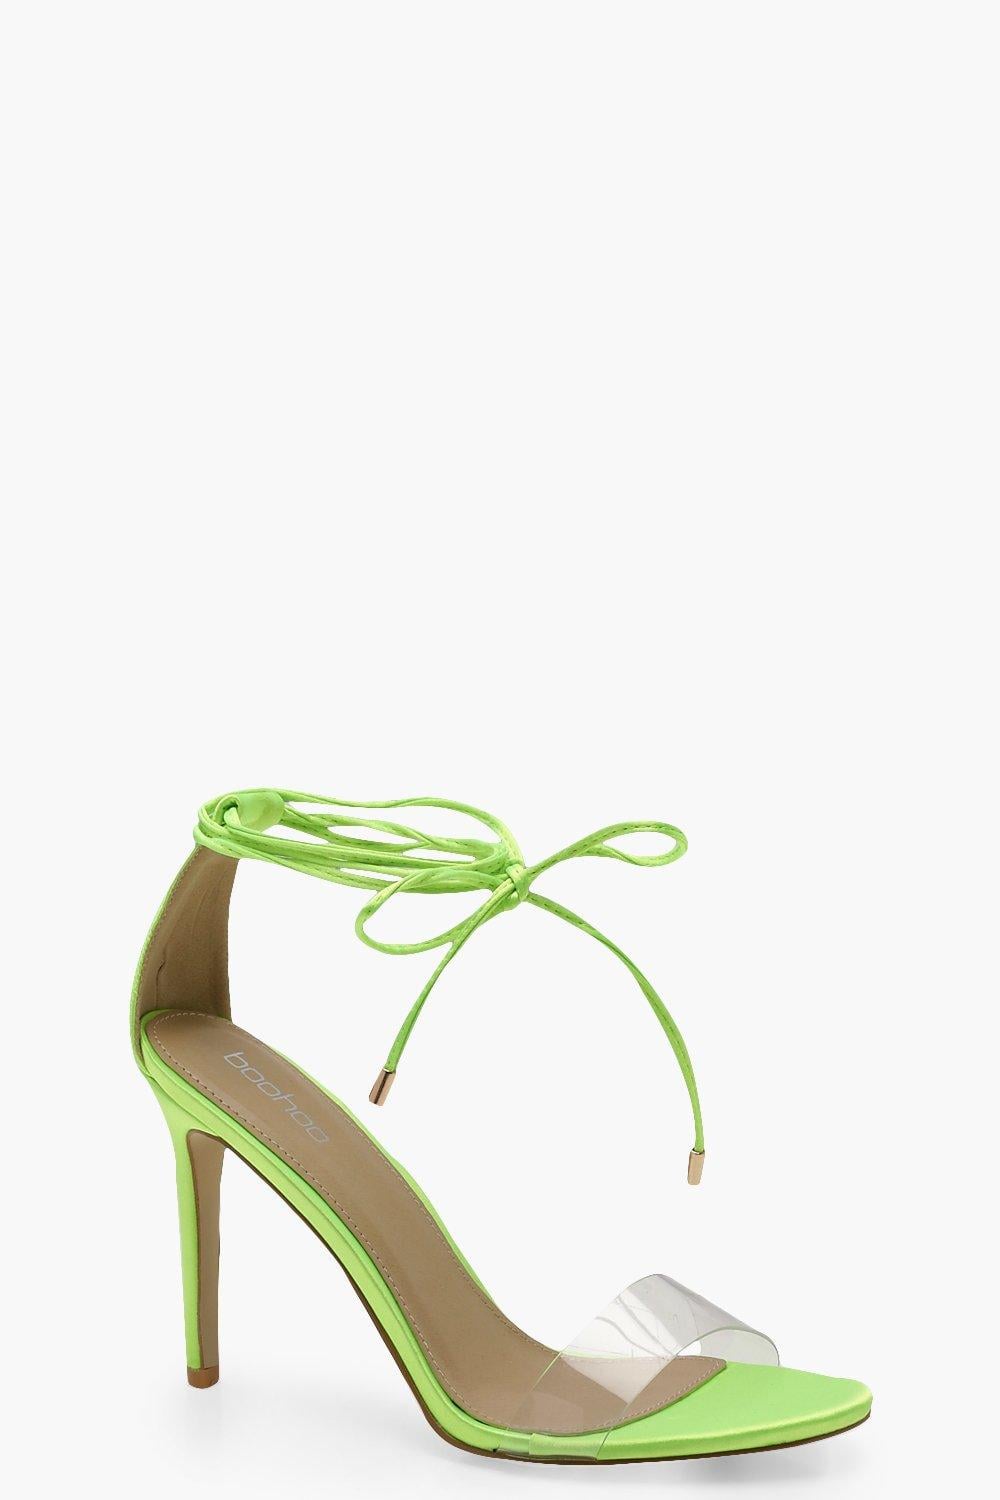 green heels australia